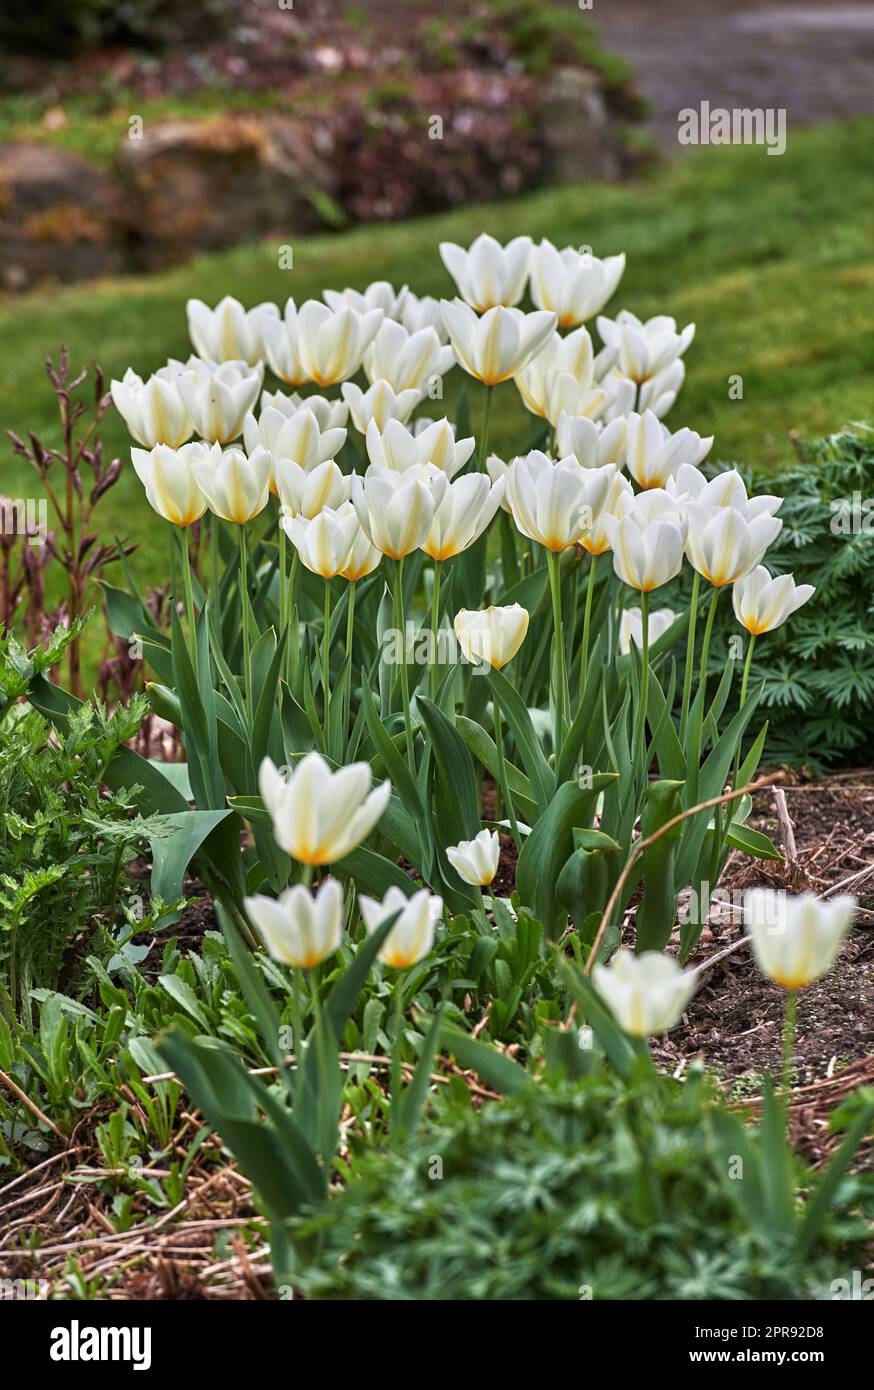 Gruppo di bellissimi tulipani nel giardino nelle prime ore della primavera. Vista panoramica dei fiori che fioriscono in primavera nella natura. Petali di fiori bianchi naturali che crescono da steli verdi lunghi e corti. Foto Stock